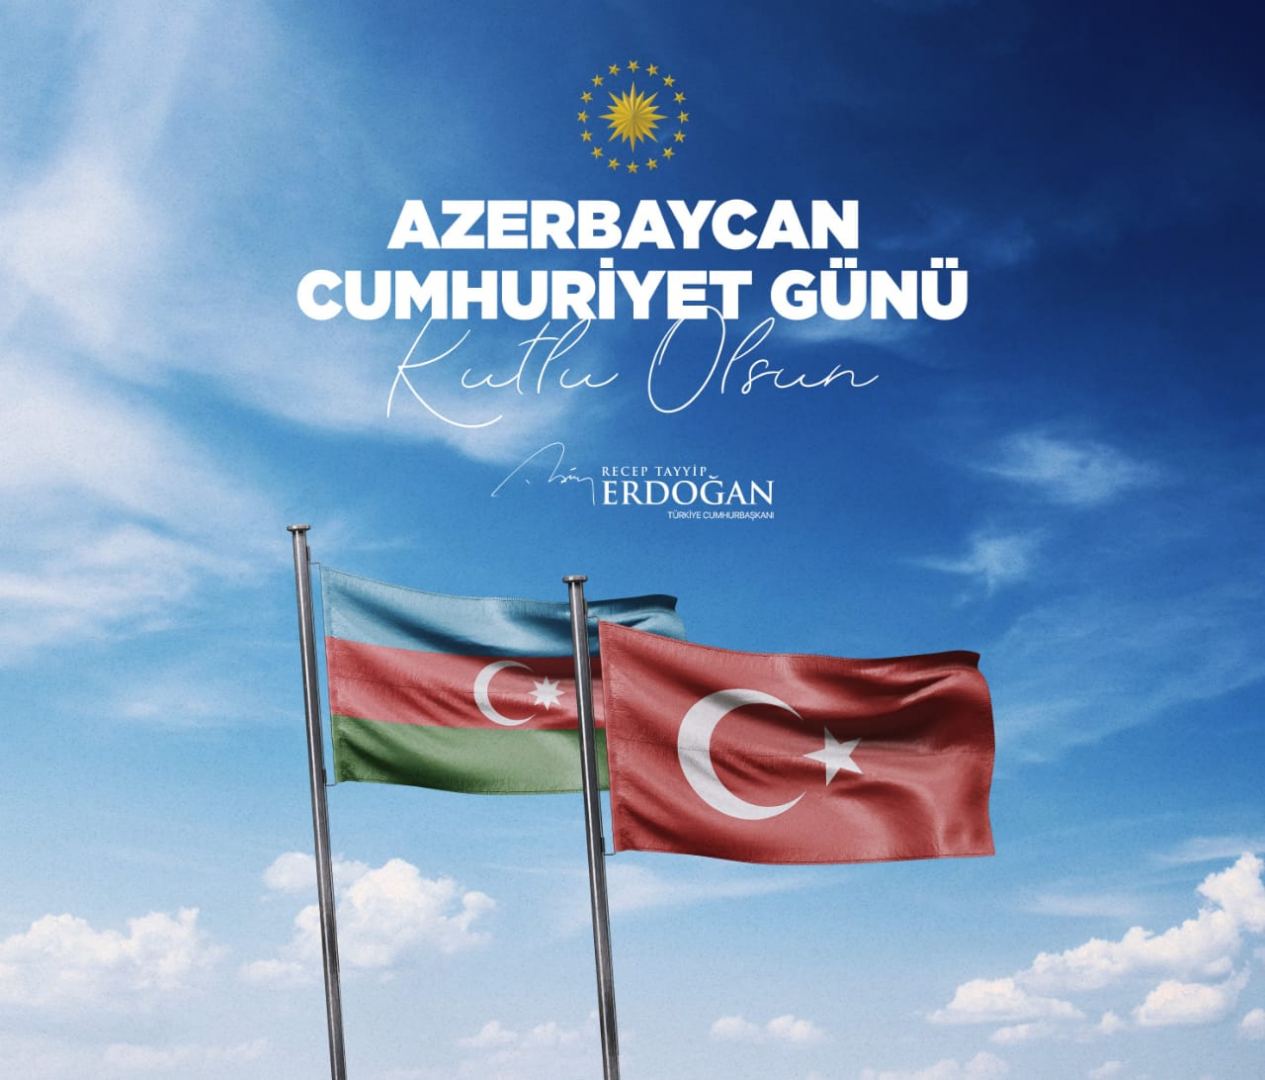 Президент Турции поздравил азербайджанский народ с Днем Республики